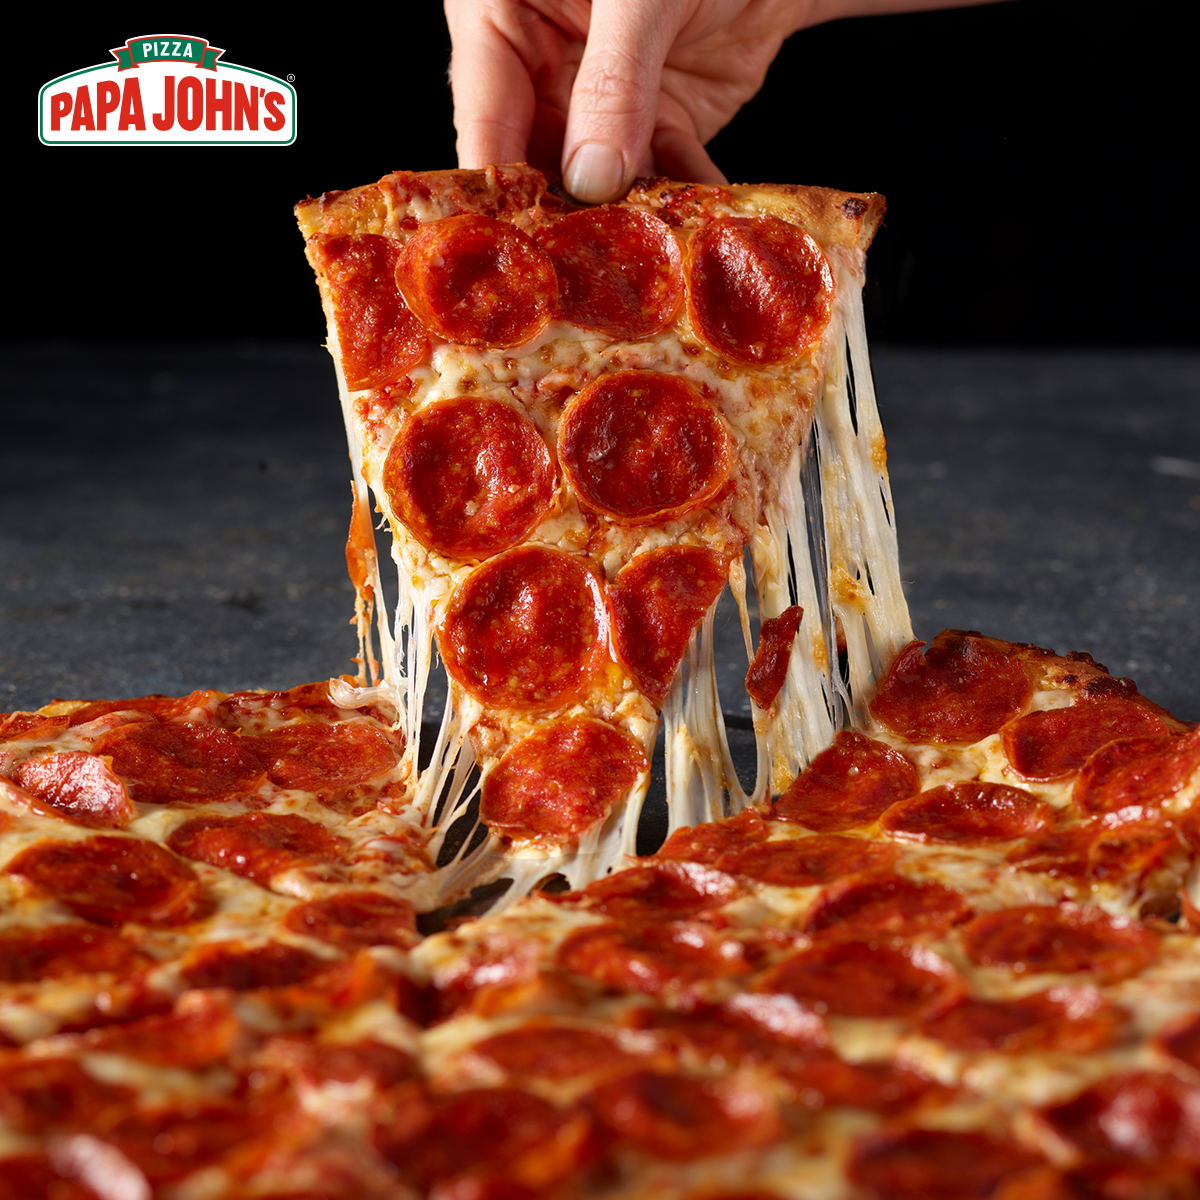 Shaq-a-Roni pizza is back at Papa Johns 